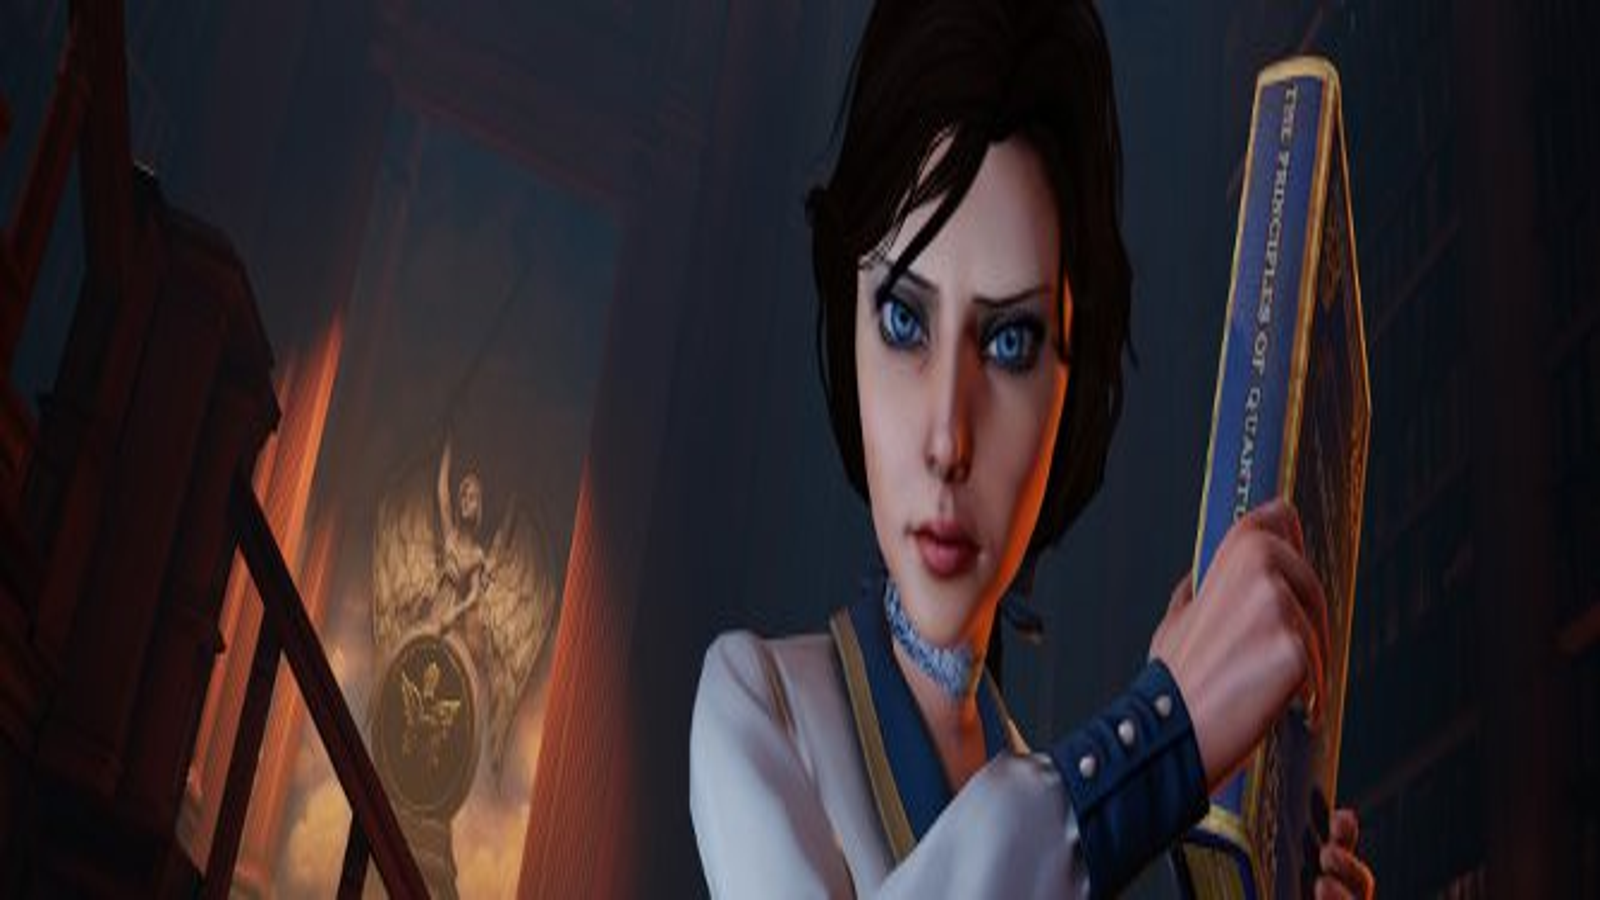 My Elizabeth cosplay from Bioshock Infinite: Burial at Sea : r/gaming